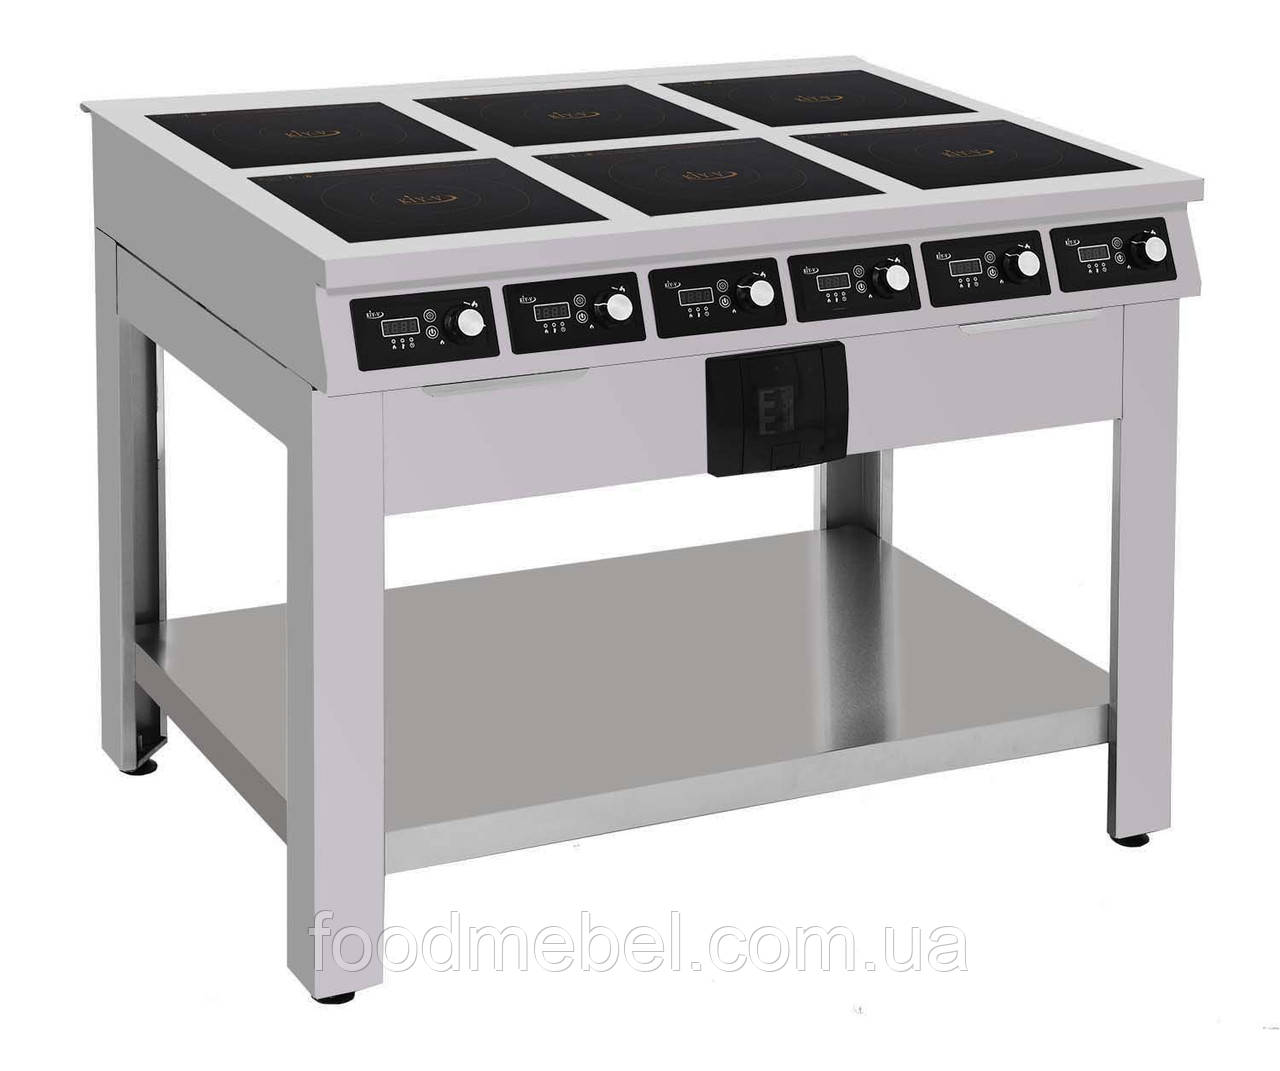 Индукционная плита ПИ-6.2-15 профессиональная 6х2,5 кВт